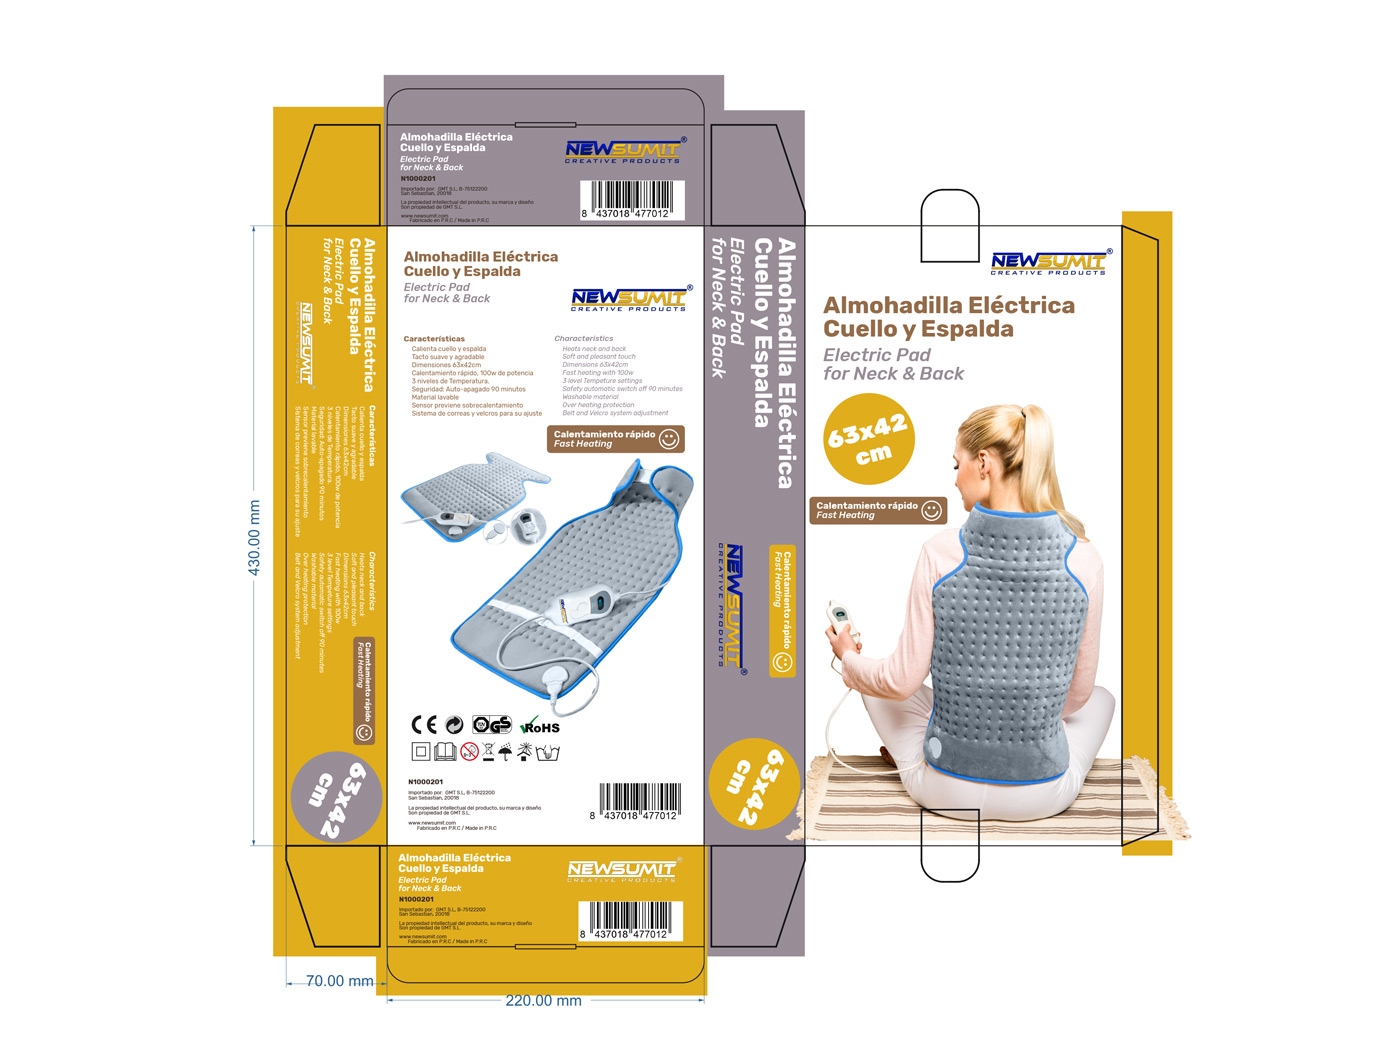 Diseño de packaging cajas esterilla eléctrica